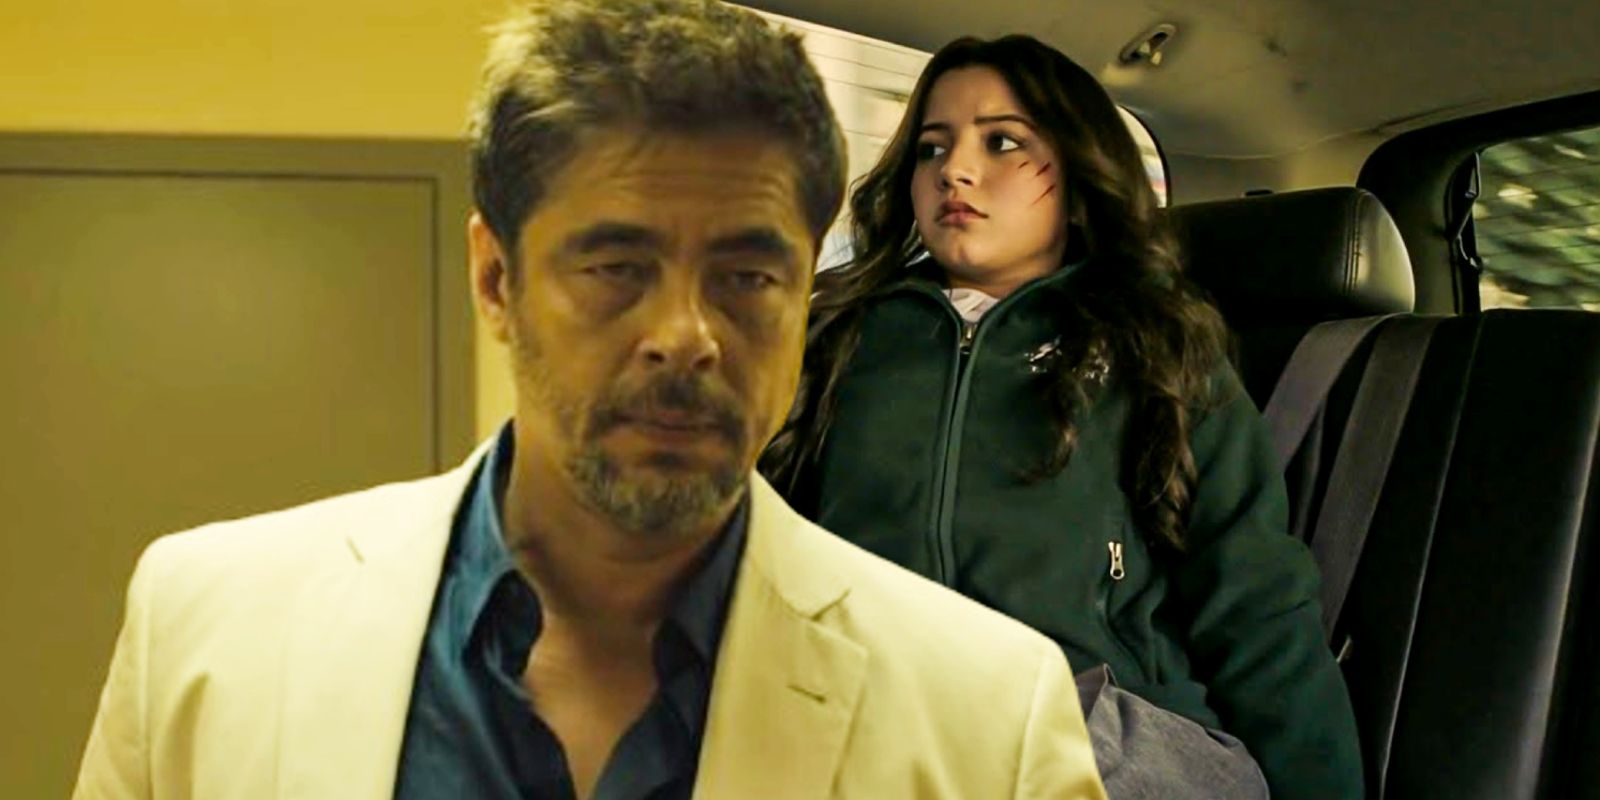 Benecio Del Toro as Alejandro and Isabela Merced as Isabel in Sicario Day of the Soldado